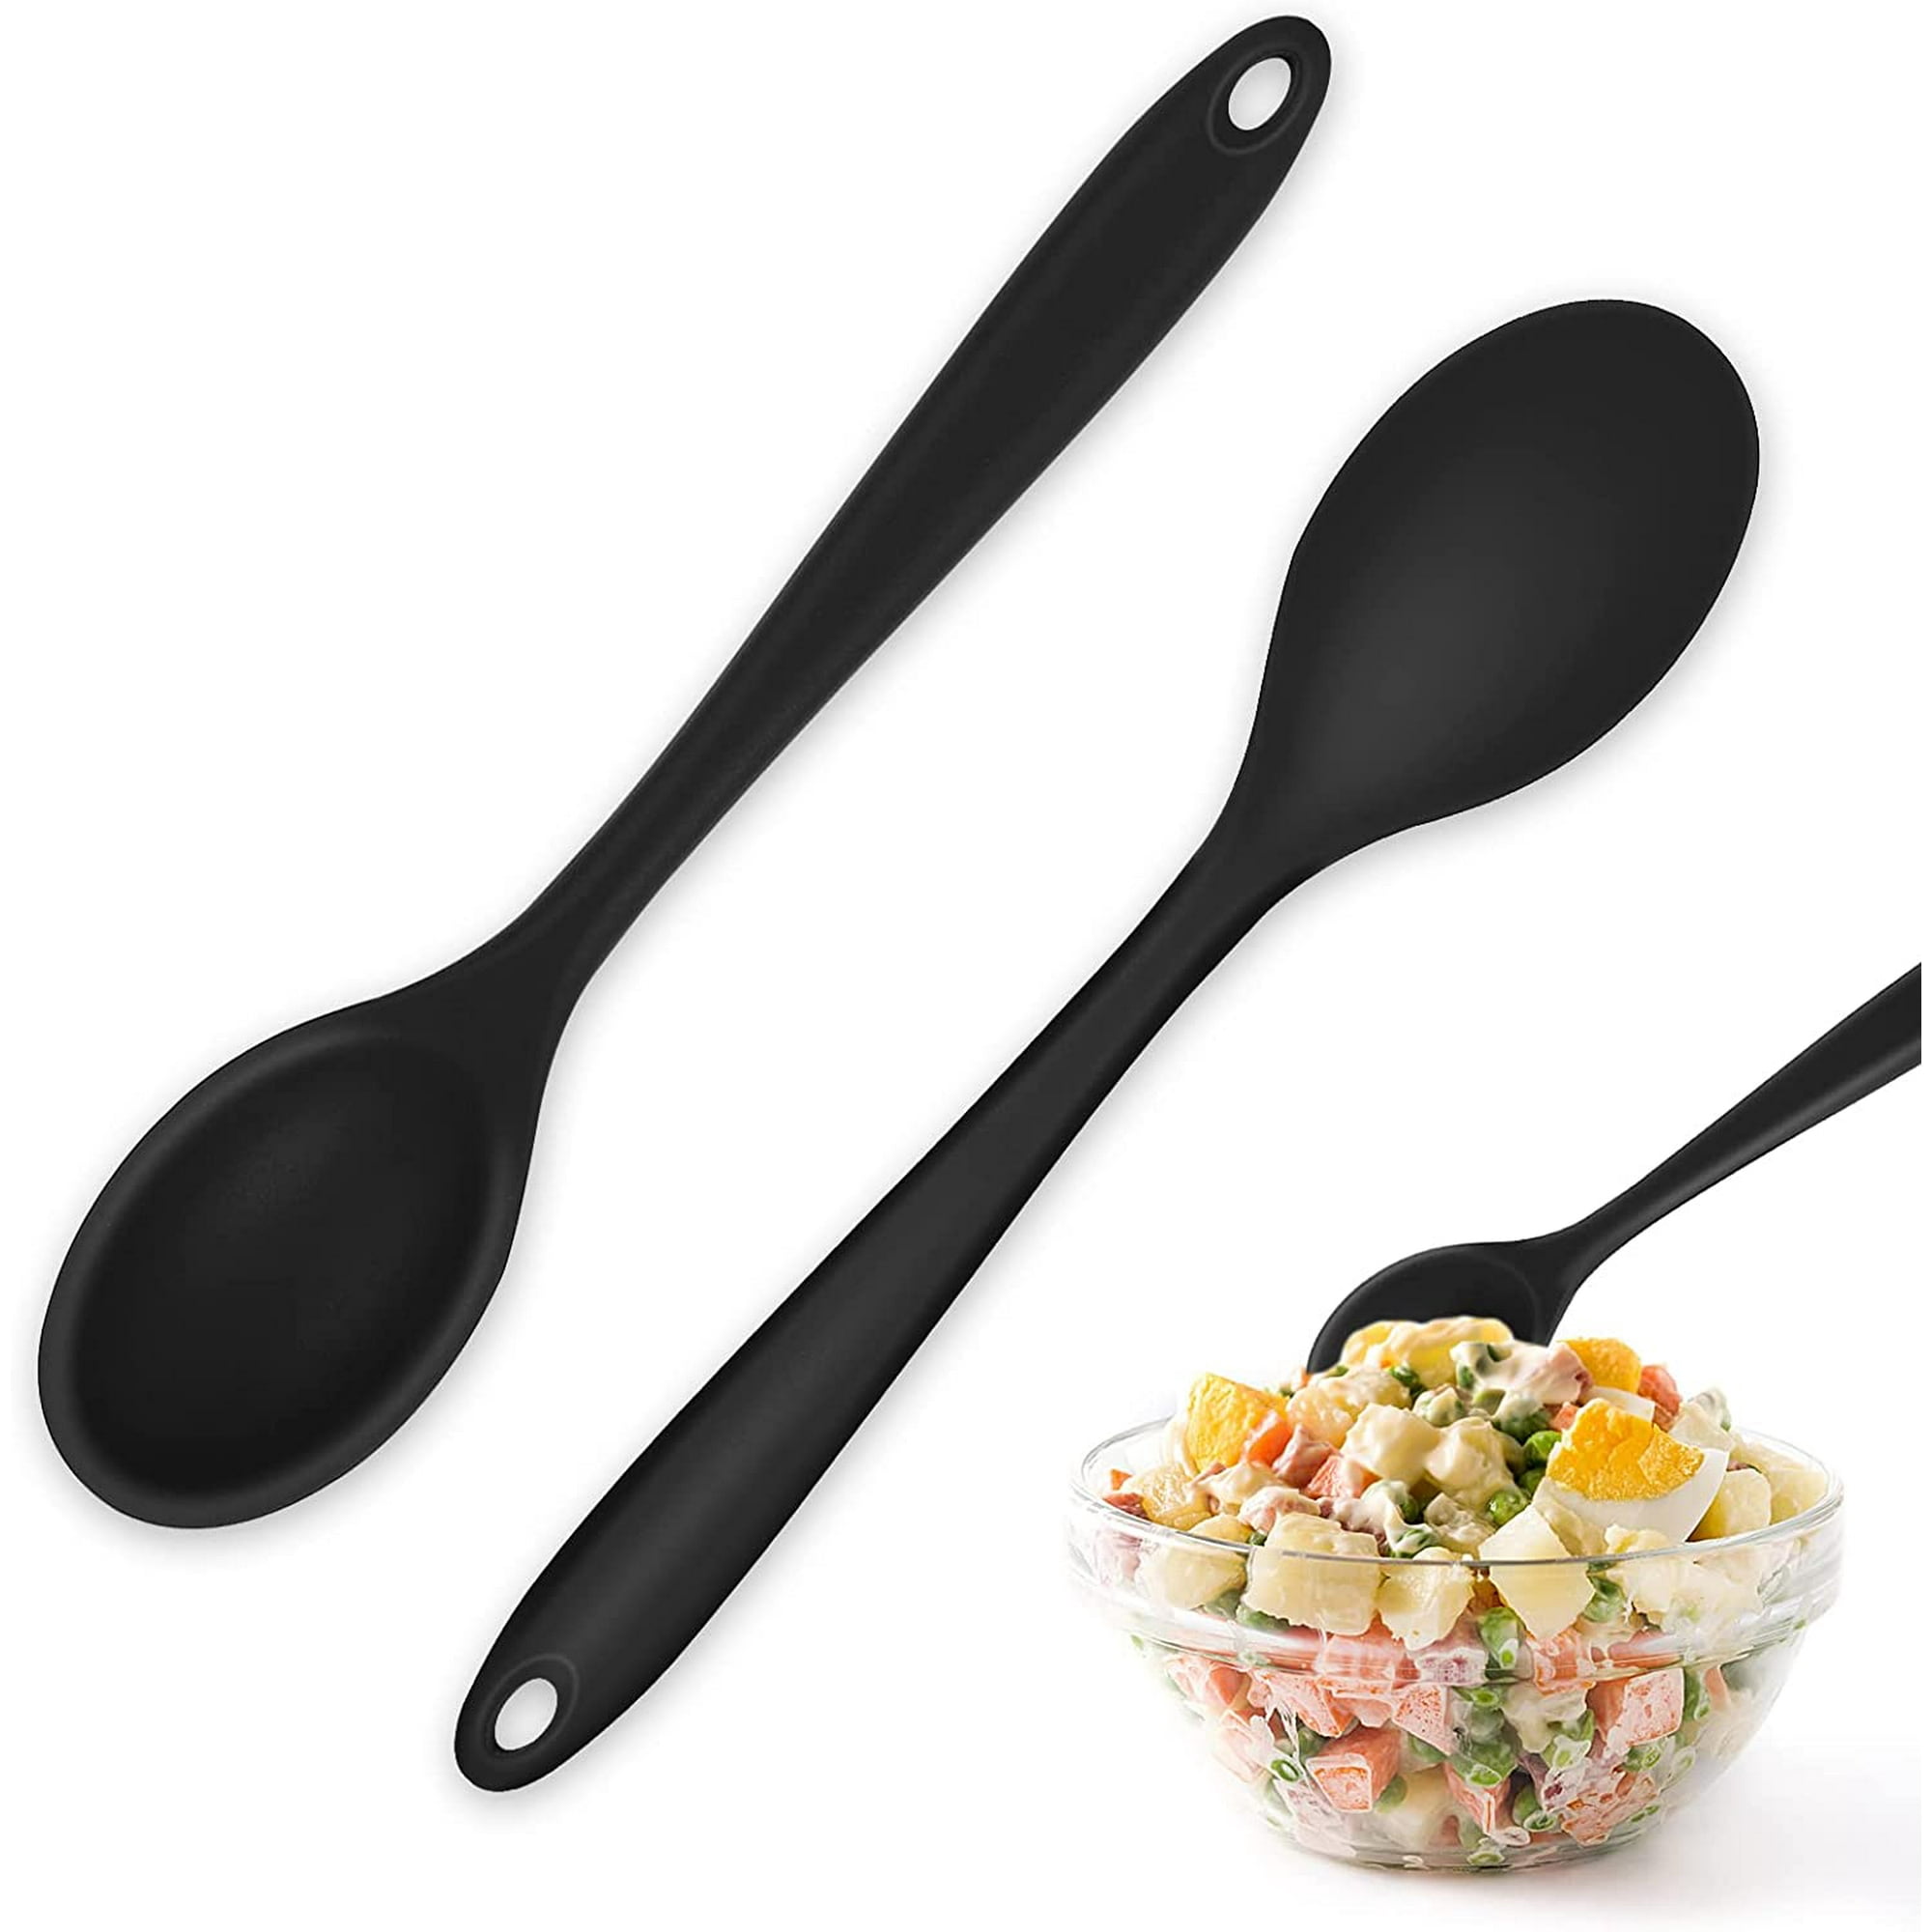 4 cucharas pequeñas de silicona para cocinar, utensilios de cocina  resistentes al calor, cuchara de cocina para mezclar hornear, rojo y negro